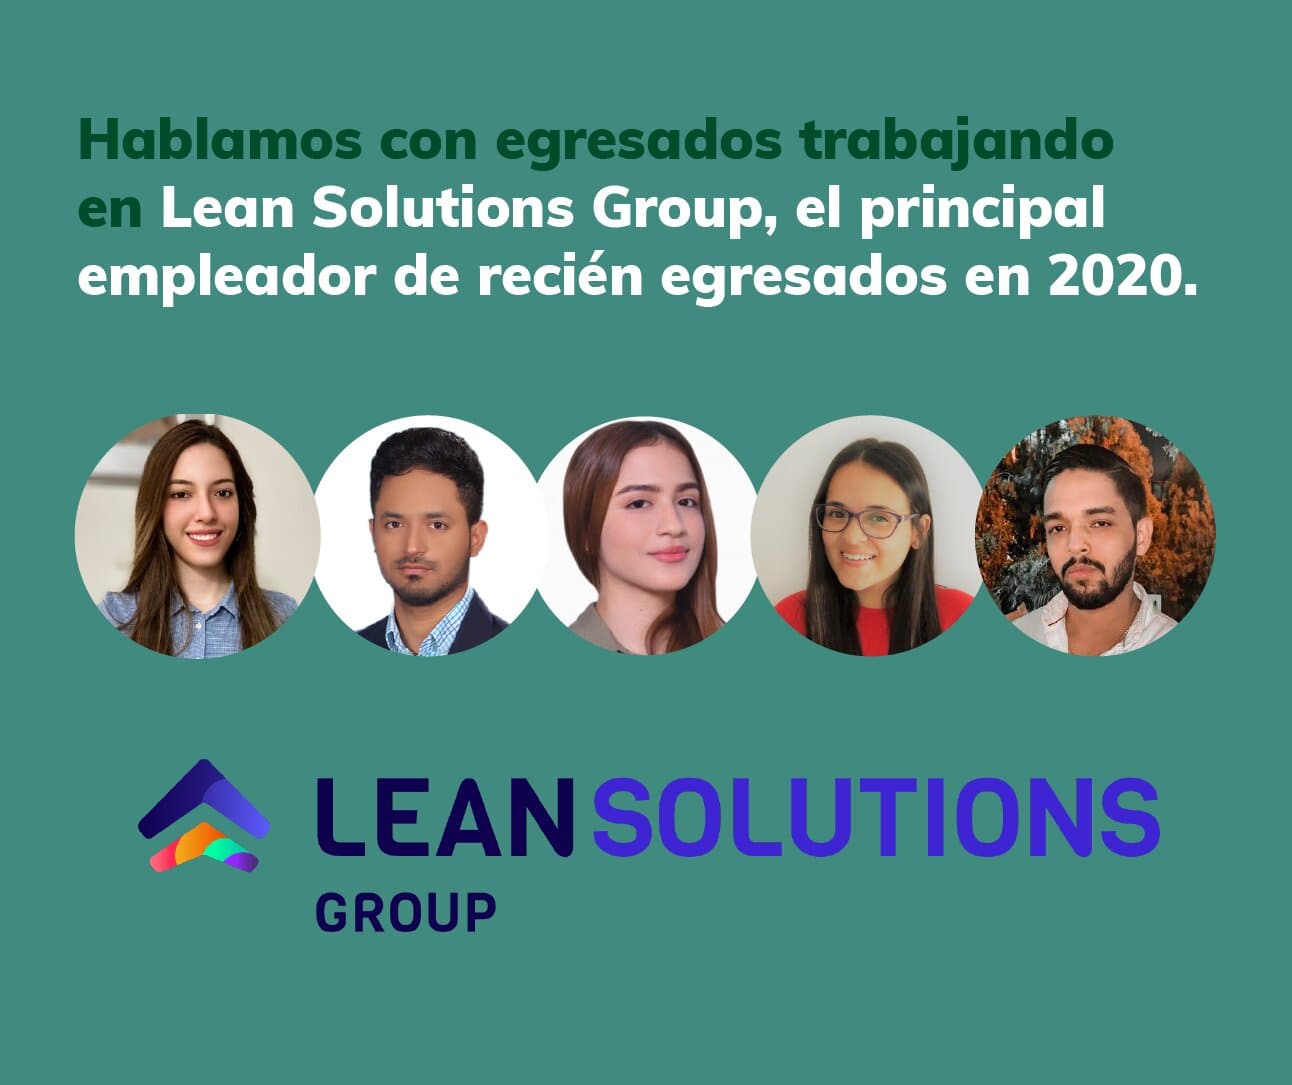 Hablamos con egresados trabajando en Lean Solutions Group, el principal empleador de recién egresados en 2020.